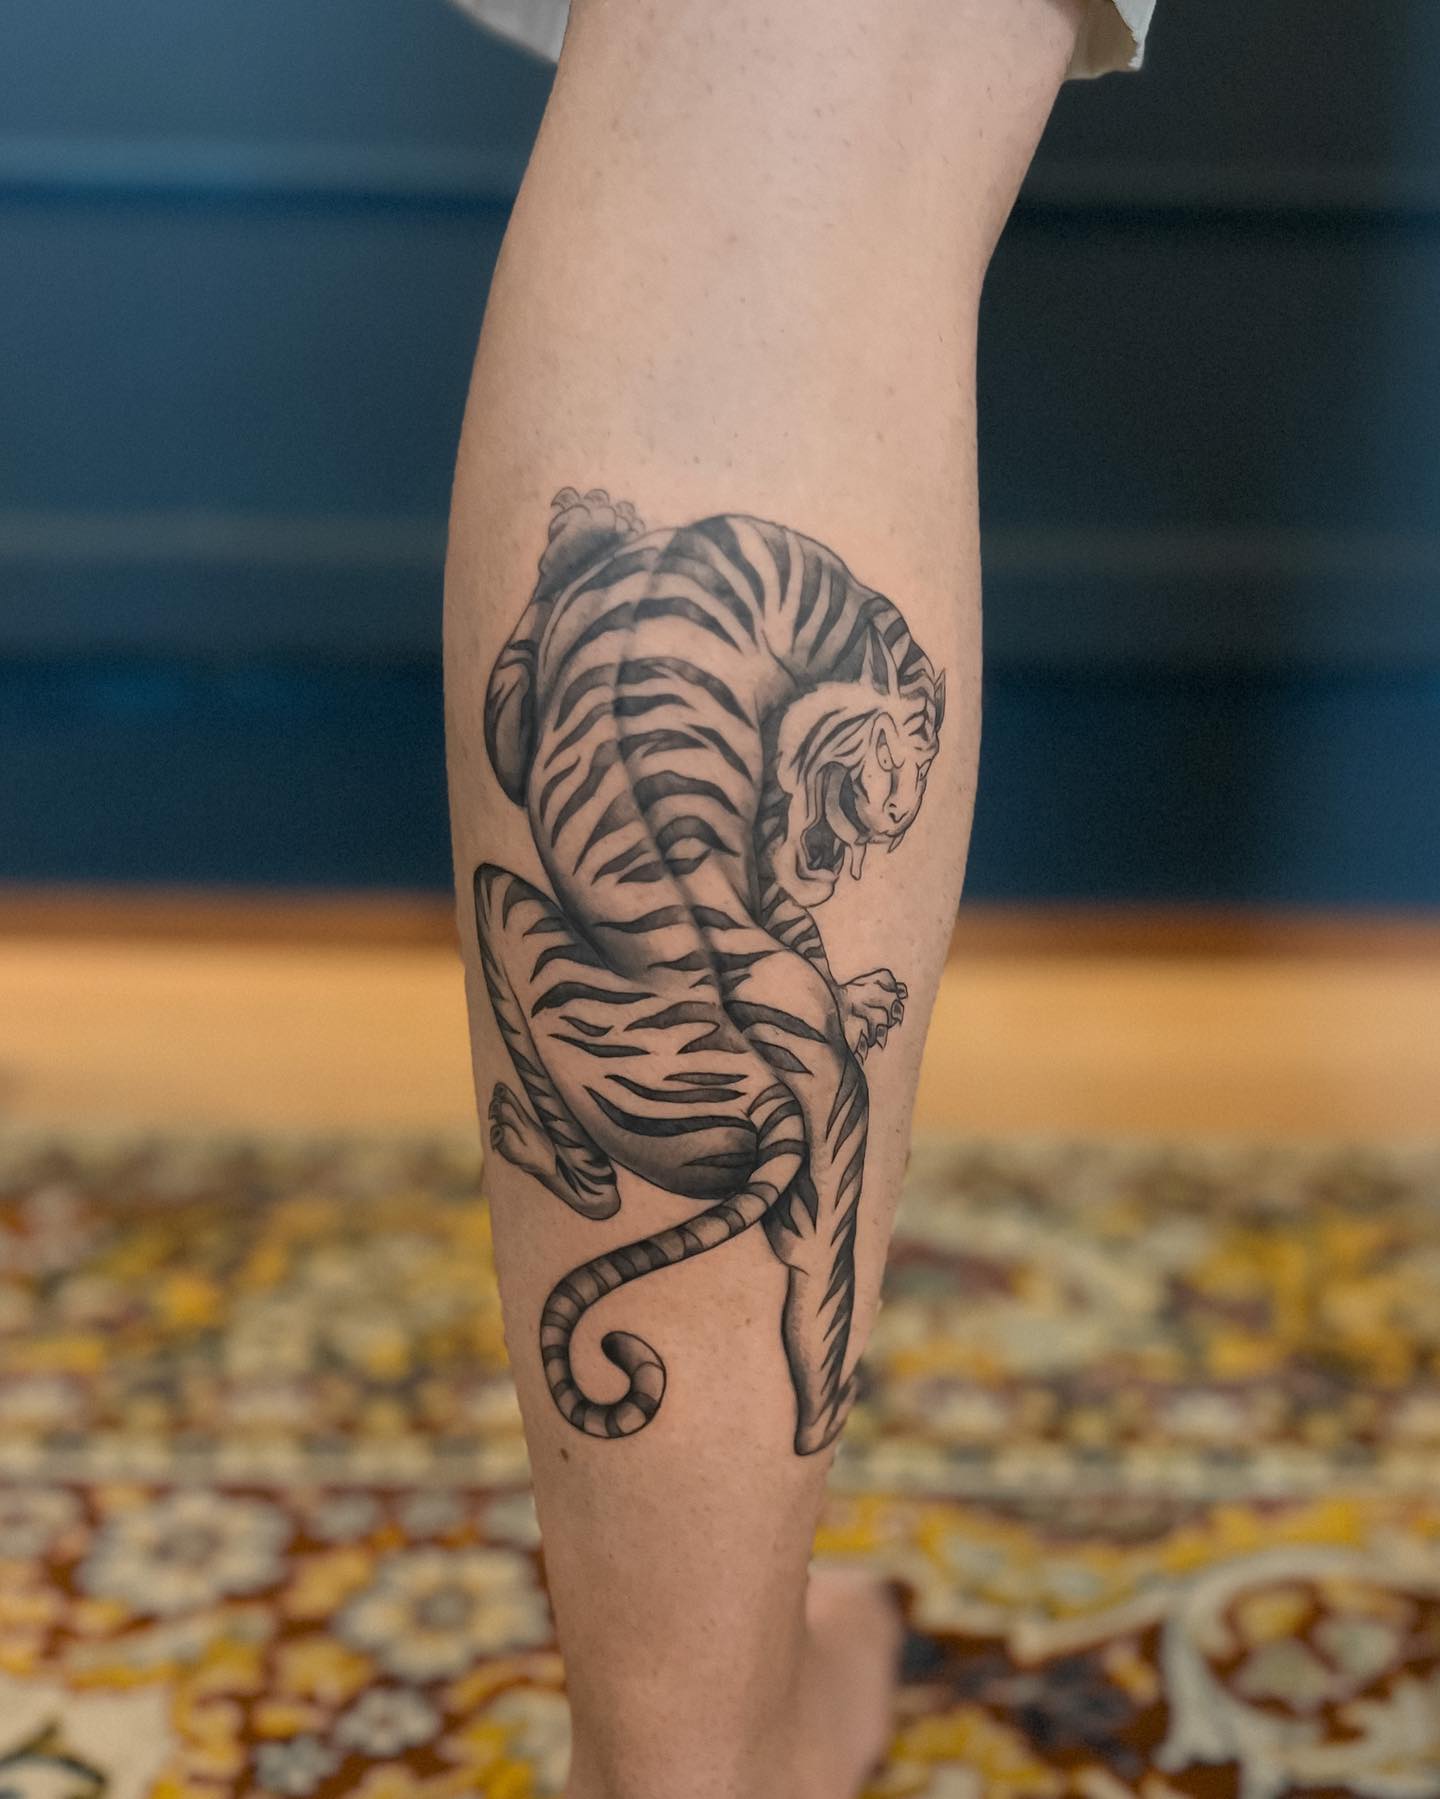 14+ Best Shoulder Tattoo Designs – Tiger Tattoo Ideas | PetPress | Tiger  tattoo, Cool shoulder tattoos, Tattoos